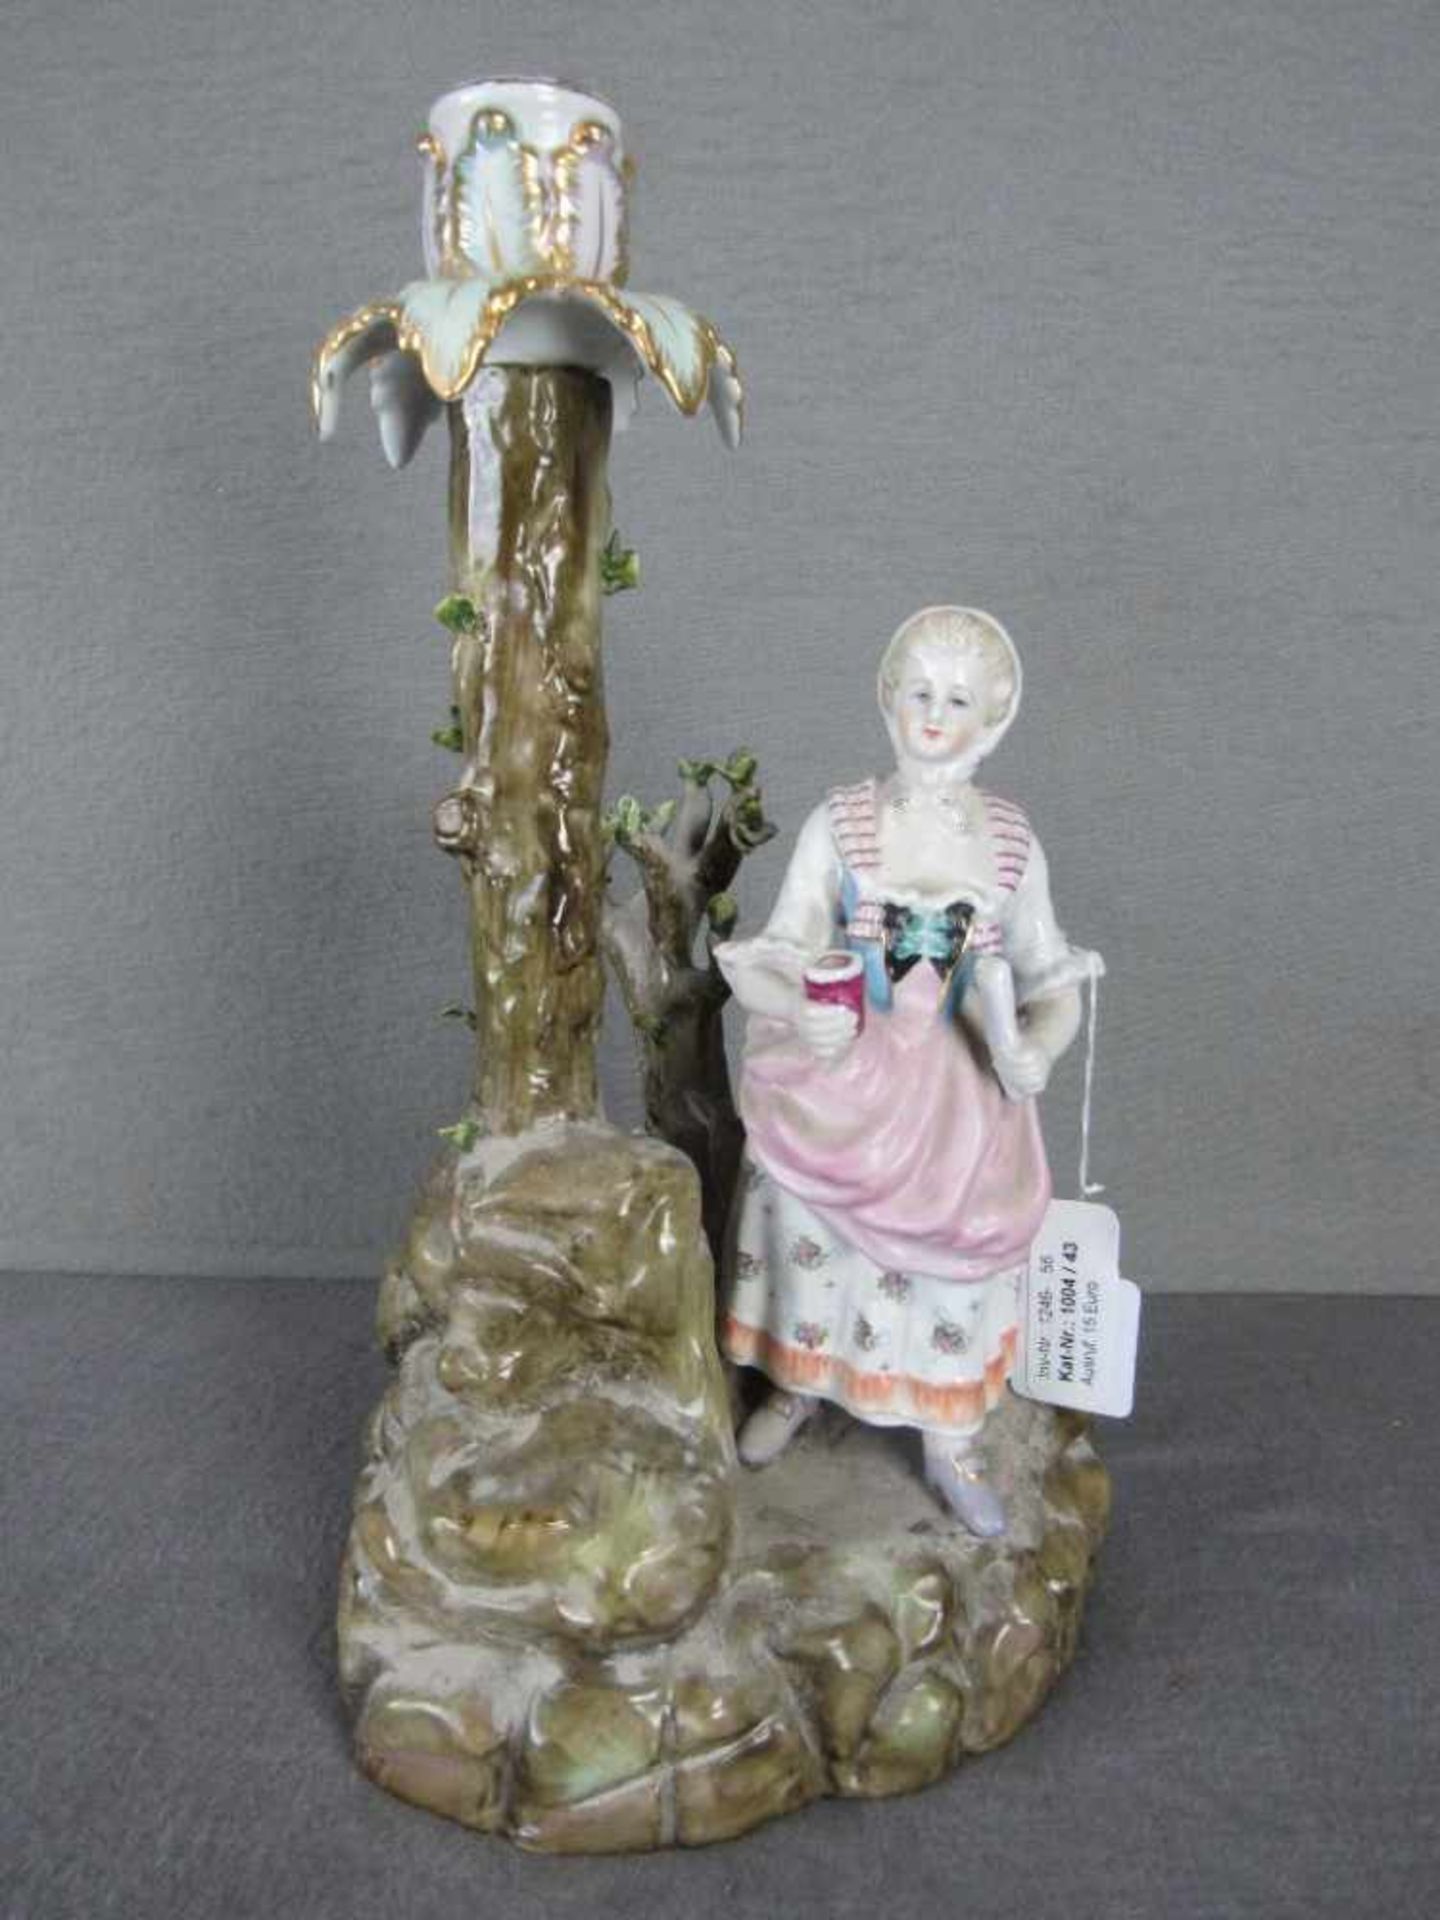 Figürlicher Kerzenleuchter Keramik trinkende Frau farbig staffiert 33cm hoch- - -20.00 % buyer's